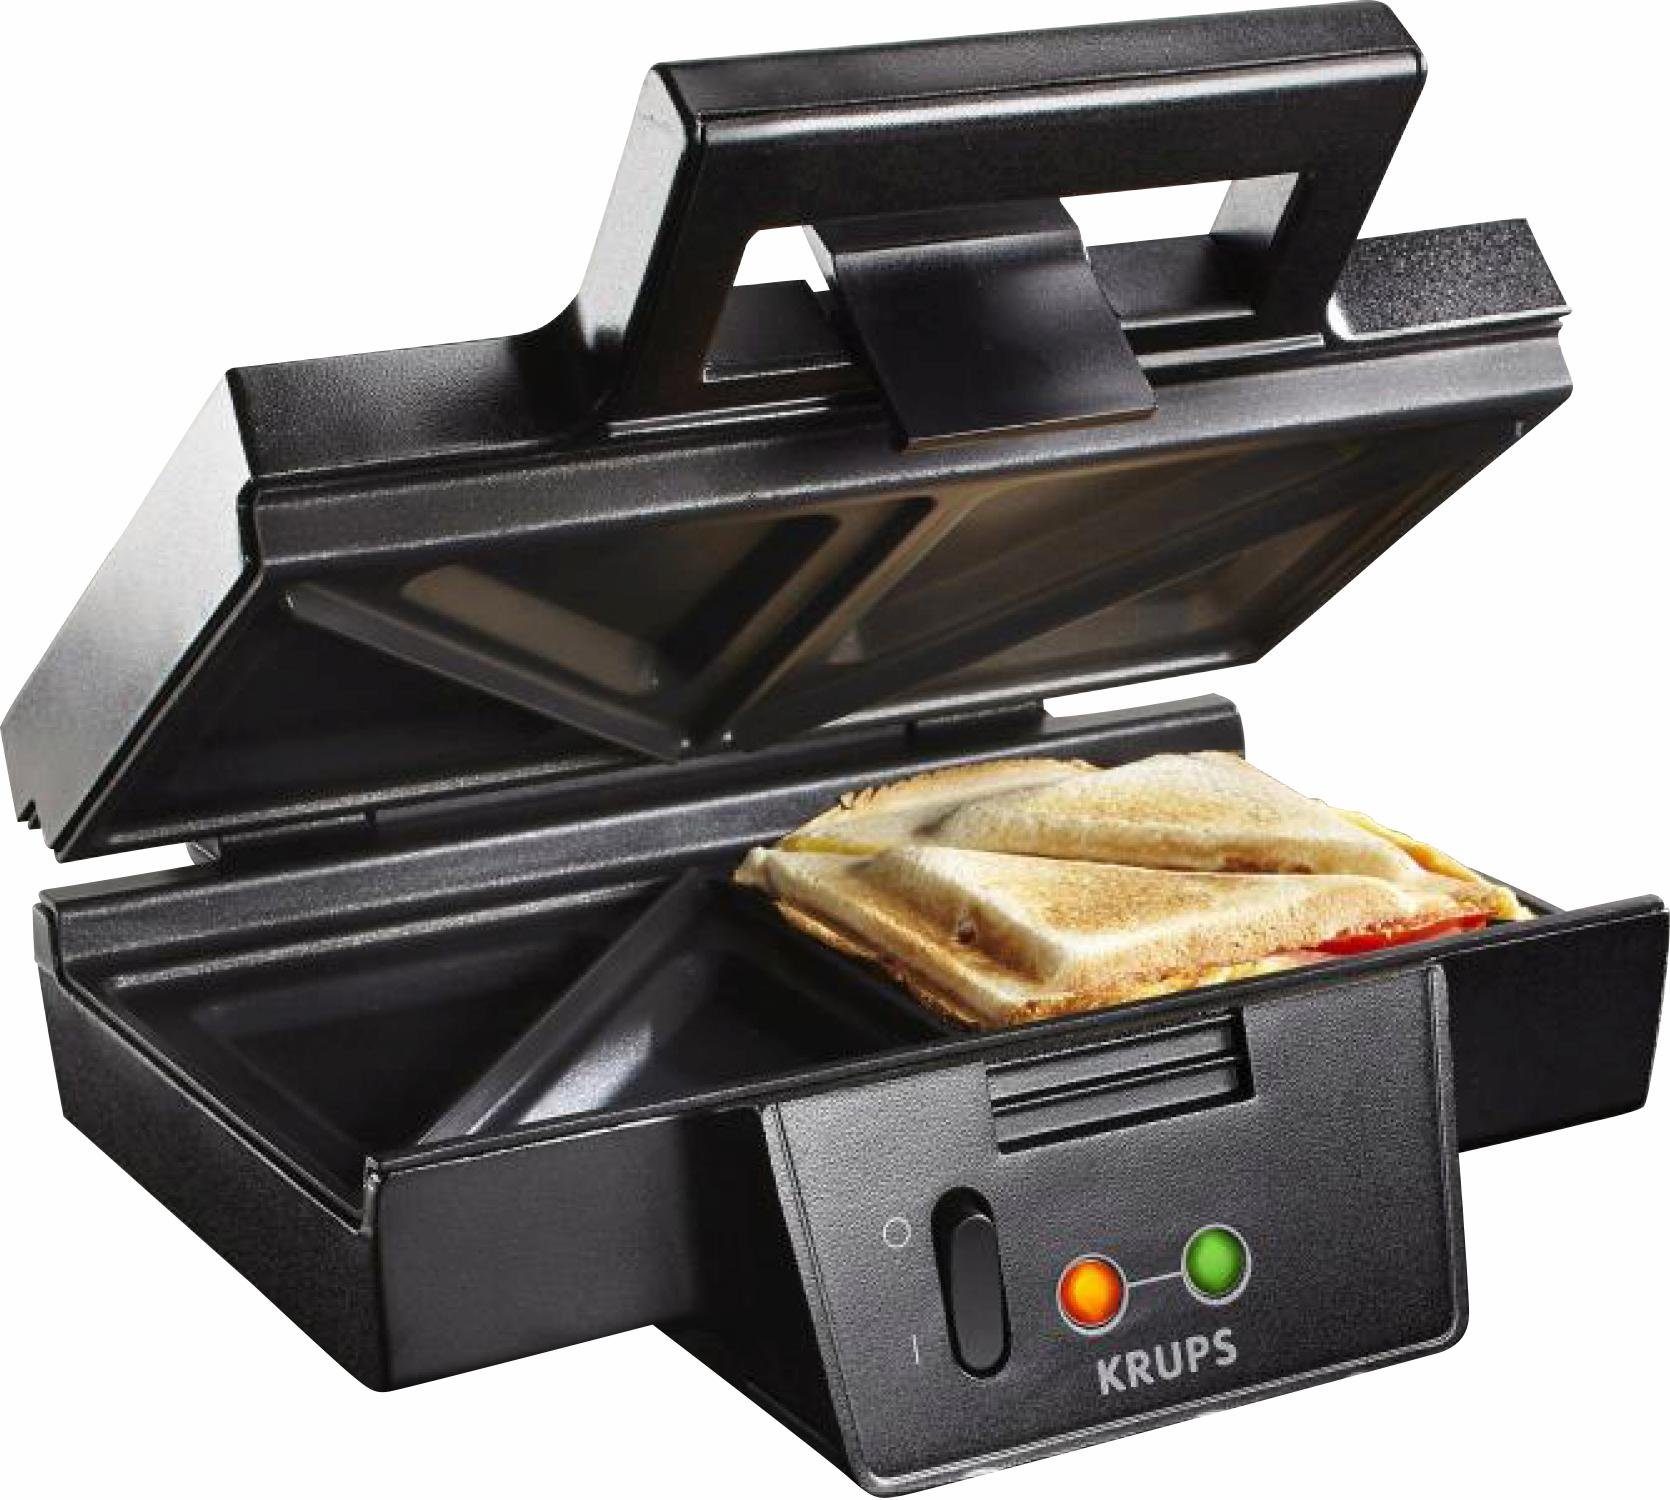 Krups Sandwichmaker FDK451, 850 W, antihaftbeschichtete Platten, Aufheiz-  und Temperaturkontrollleuchte